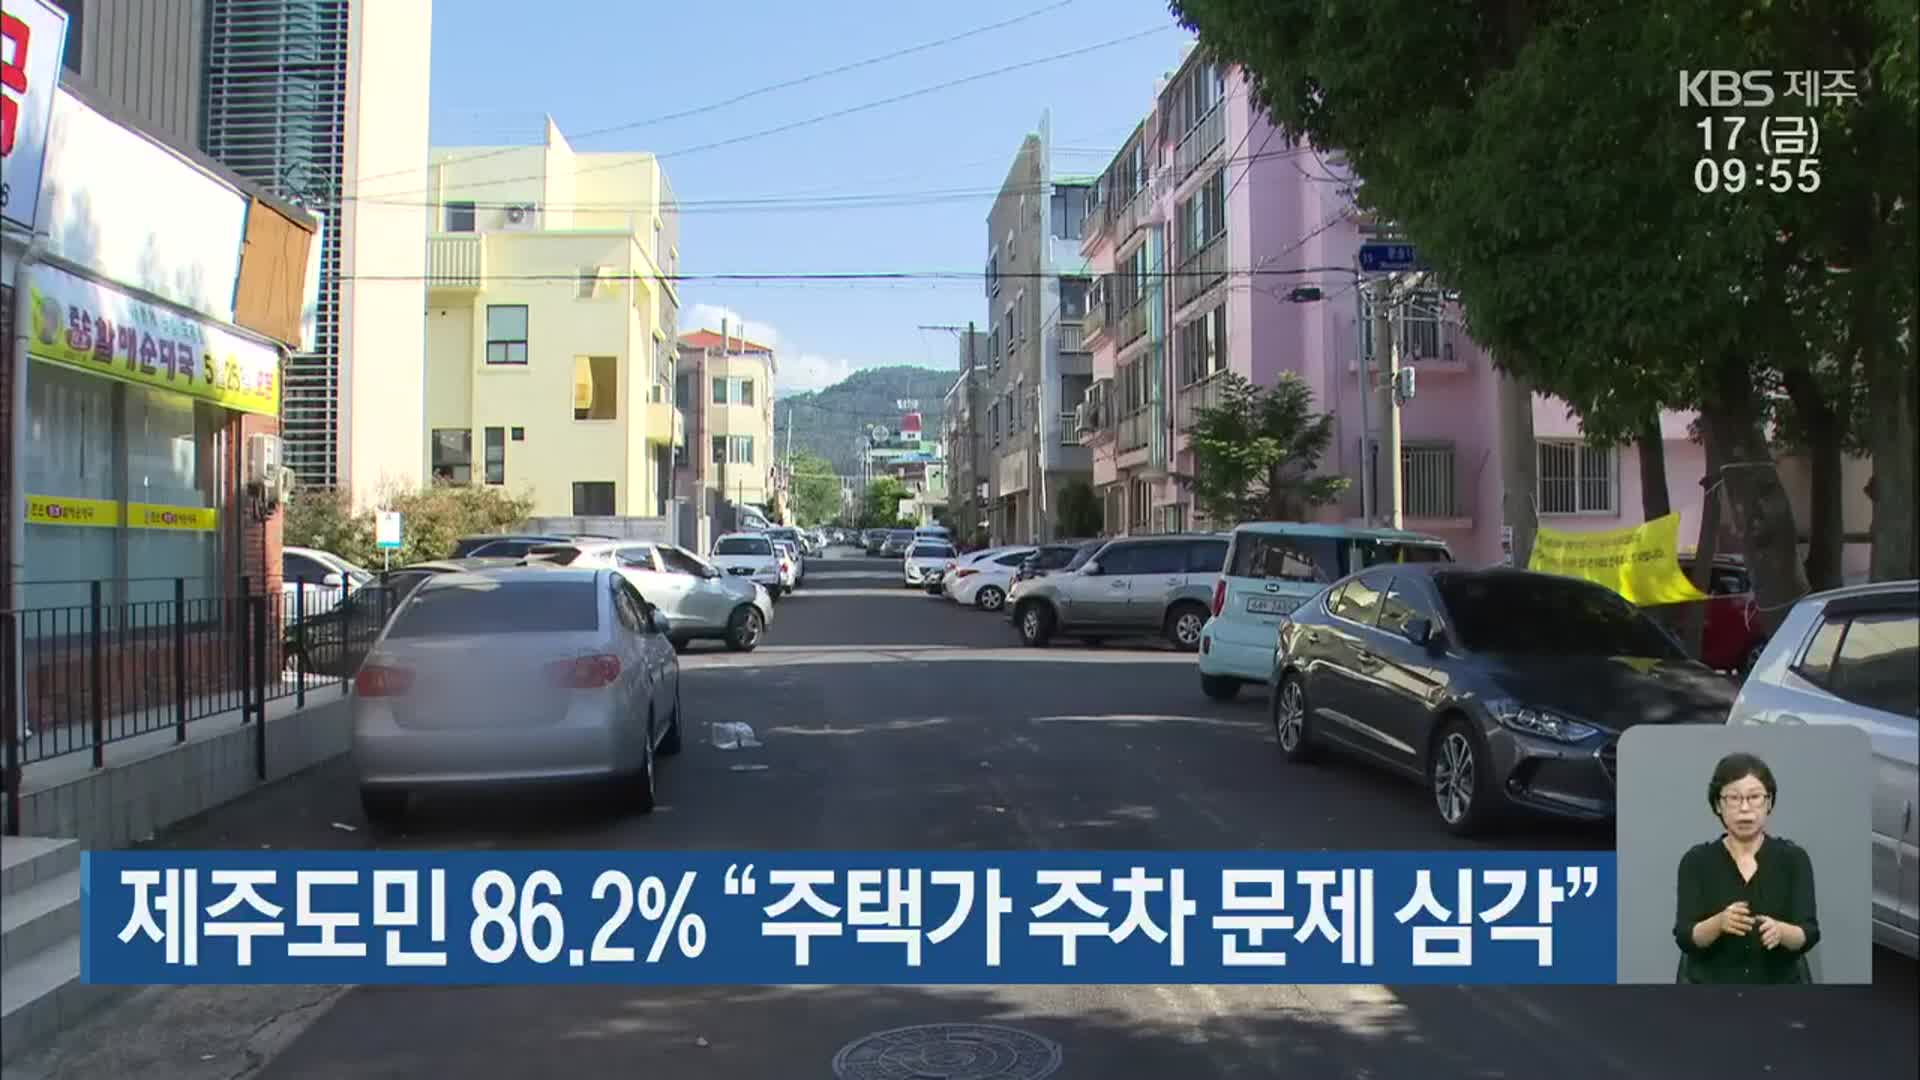 제주도민 86.2% “주택가 주차 문제 심각”